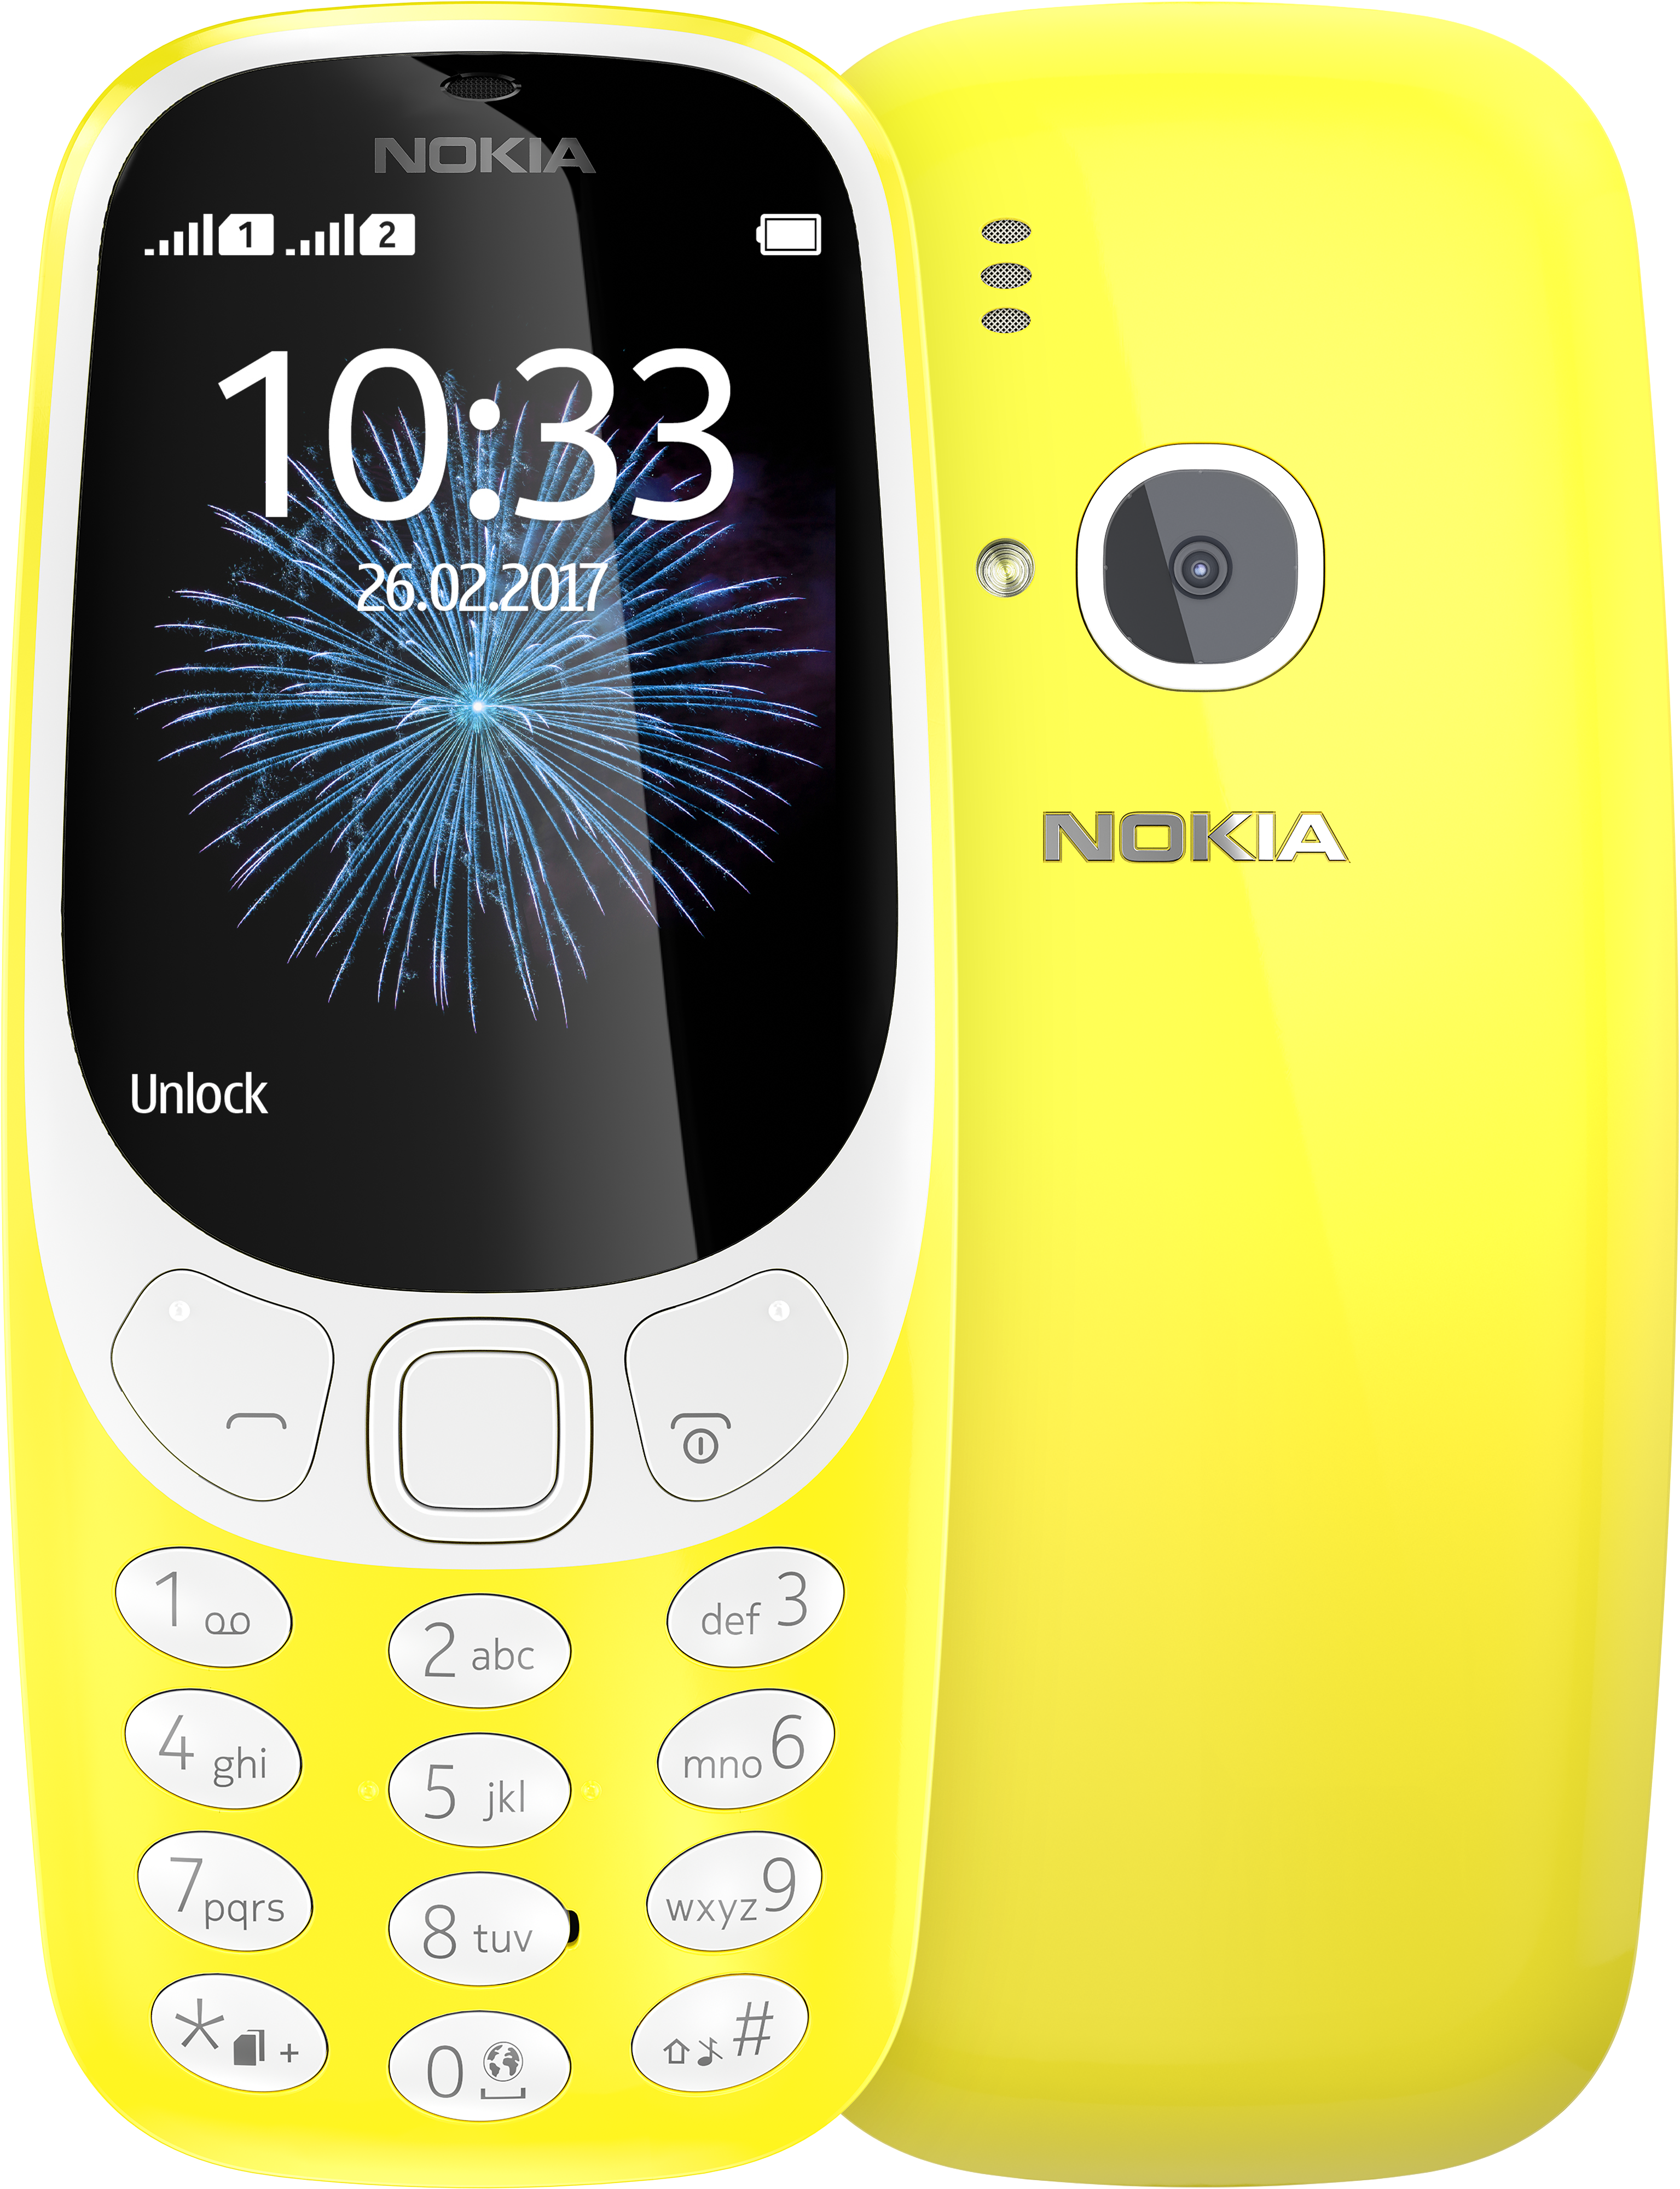 Nokia 3310 unlocked